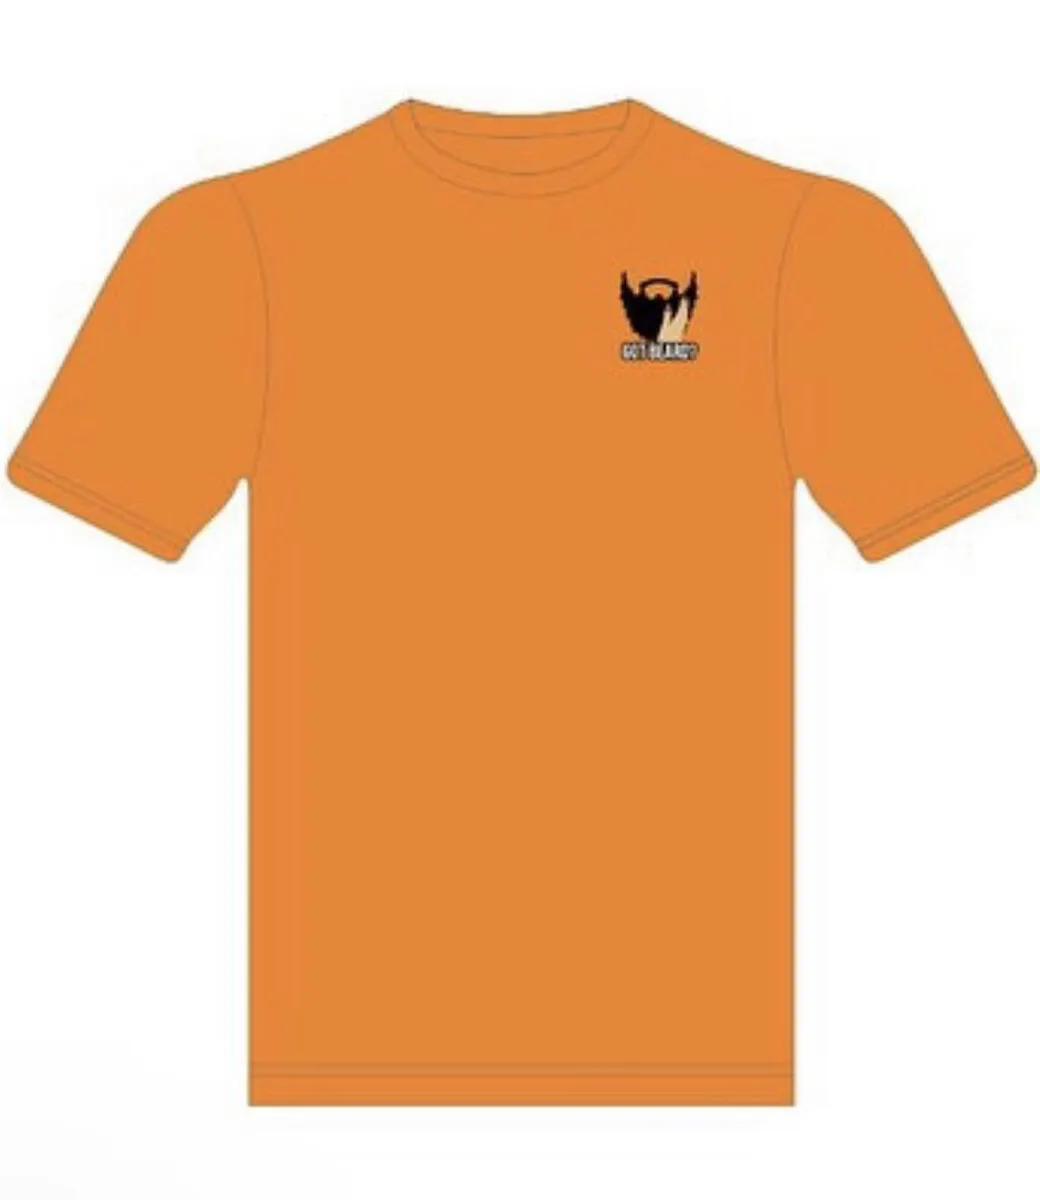 Orange Tshirts